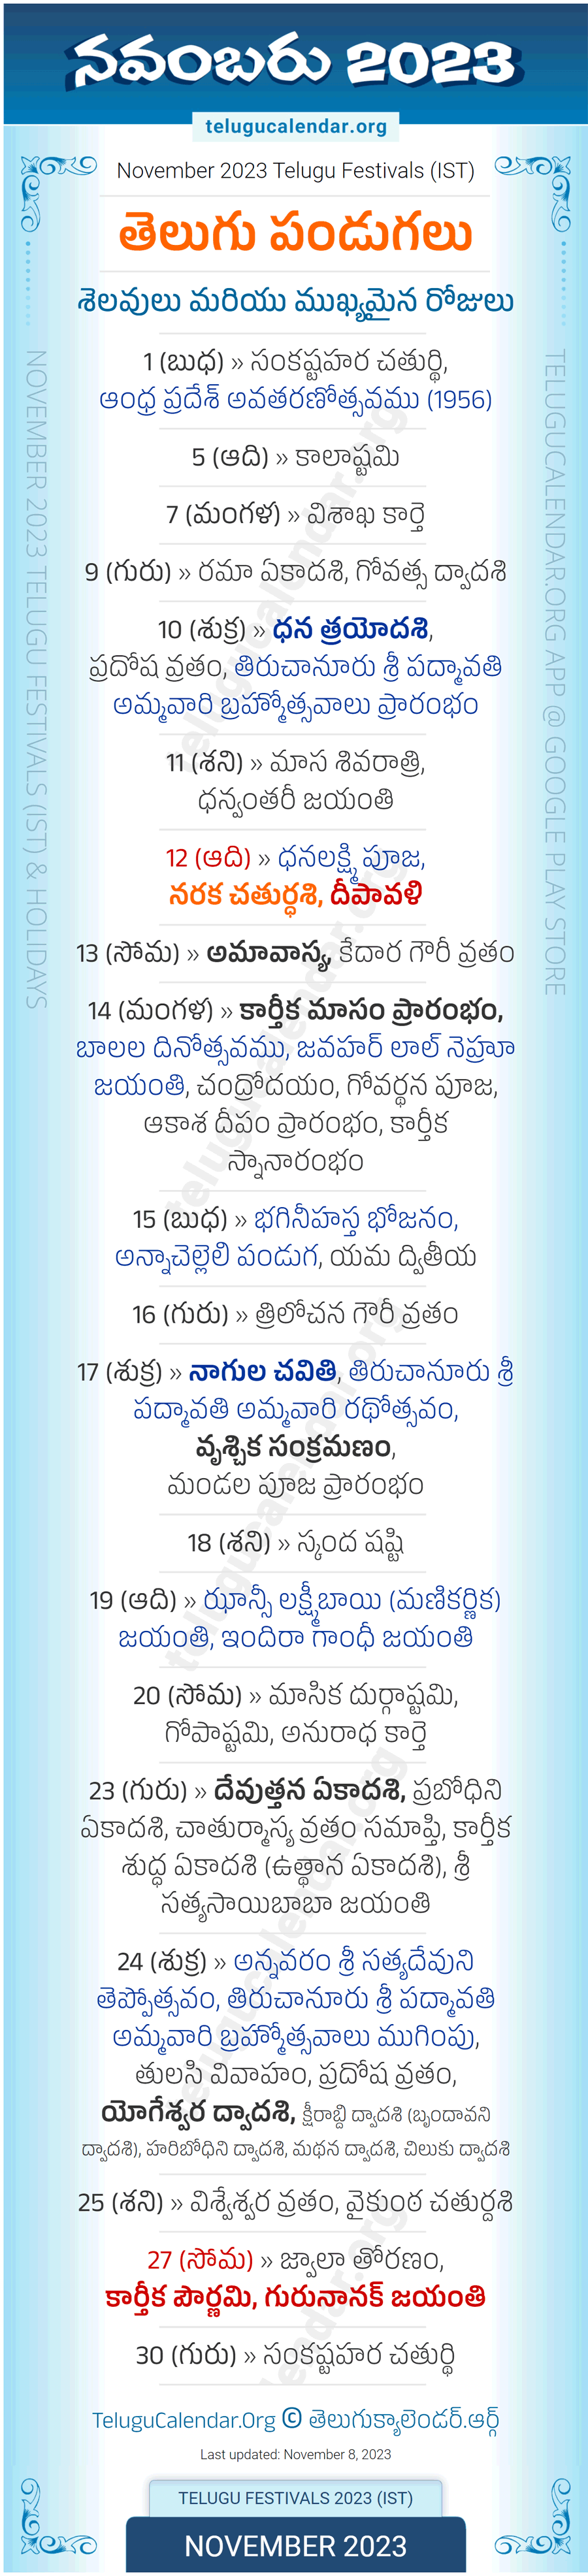 Telugu Festivals 2023 November